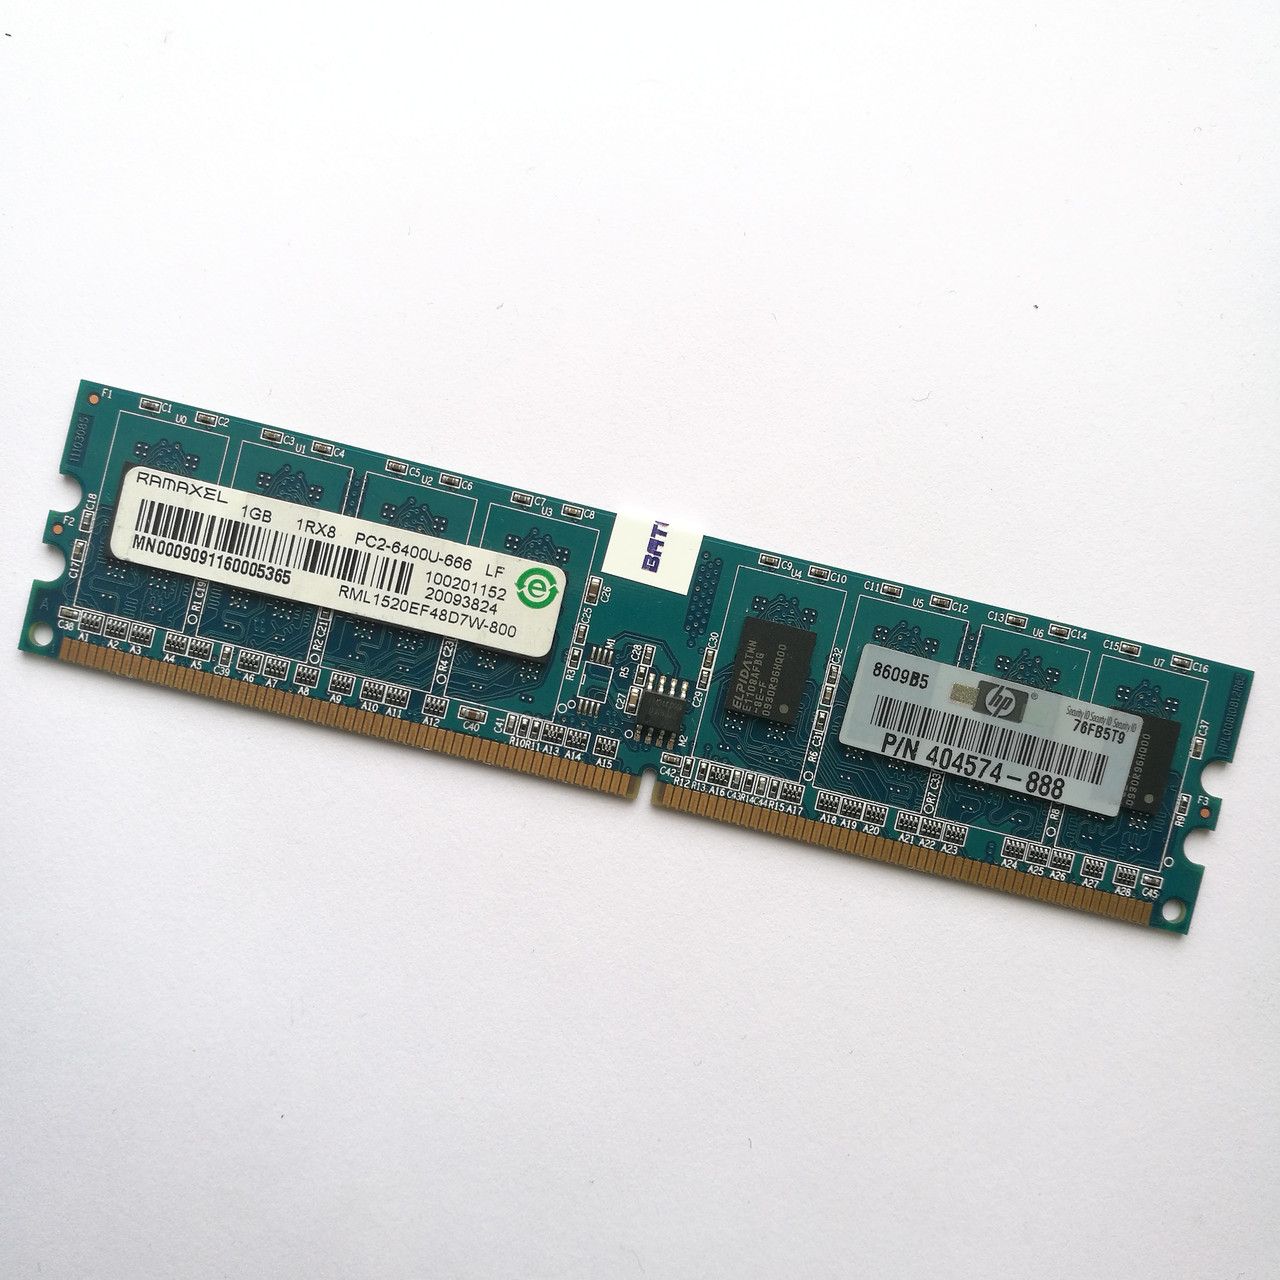 Оперативная память Ramaxel DDR2 1Gb 800MHz PC2 6400U CL6 (RML1520EF48D7W-800) Б/У, фото 1